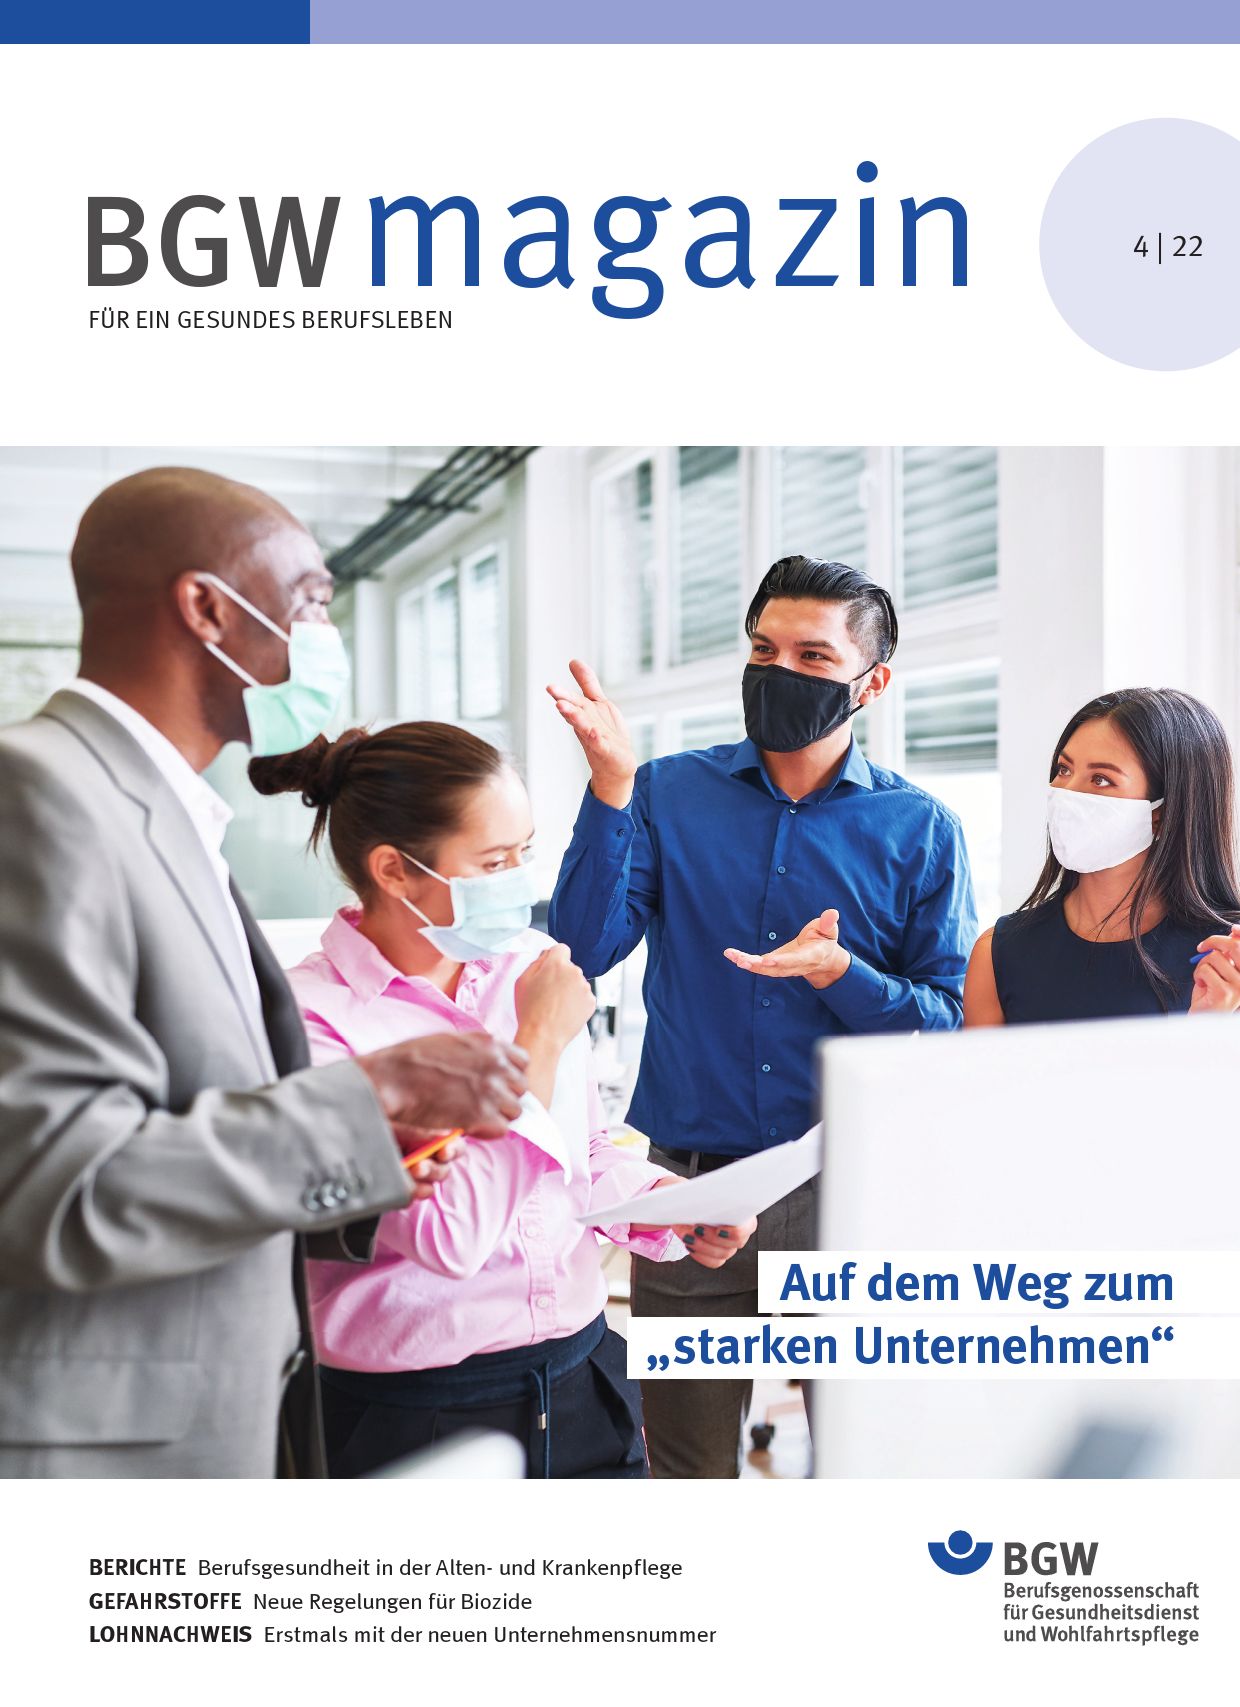 Titelseite BGW magazin 4/2022 - mit dem Titelthema "Auf dem Weg zum 'starken Unternehmen'", das Bild dazu zeigt eine Gruppe von Menschen im Gespräch